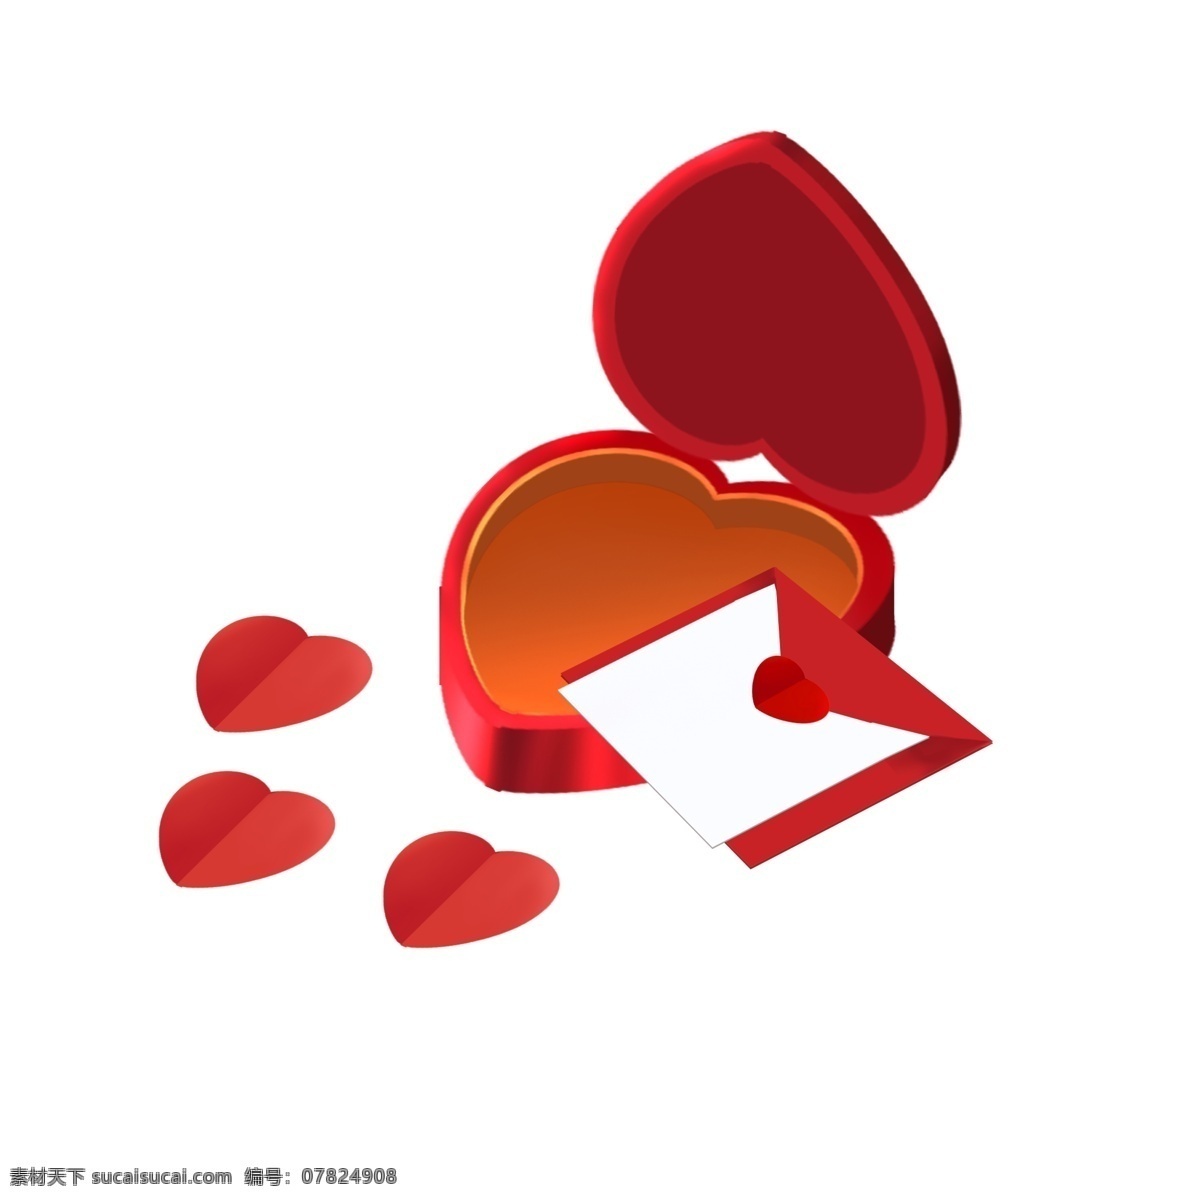 爱心 气球 礼物 盒 插画 红色的盒子 爱心气球 卡通插画 气球插画 爱情插画 礼物插画 爱心的盒子